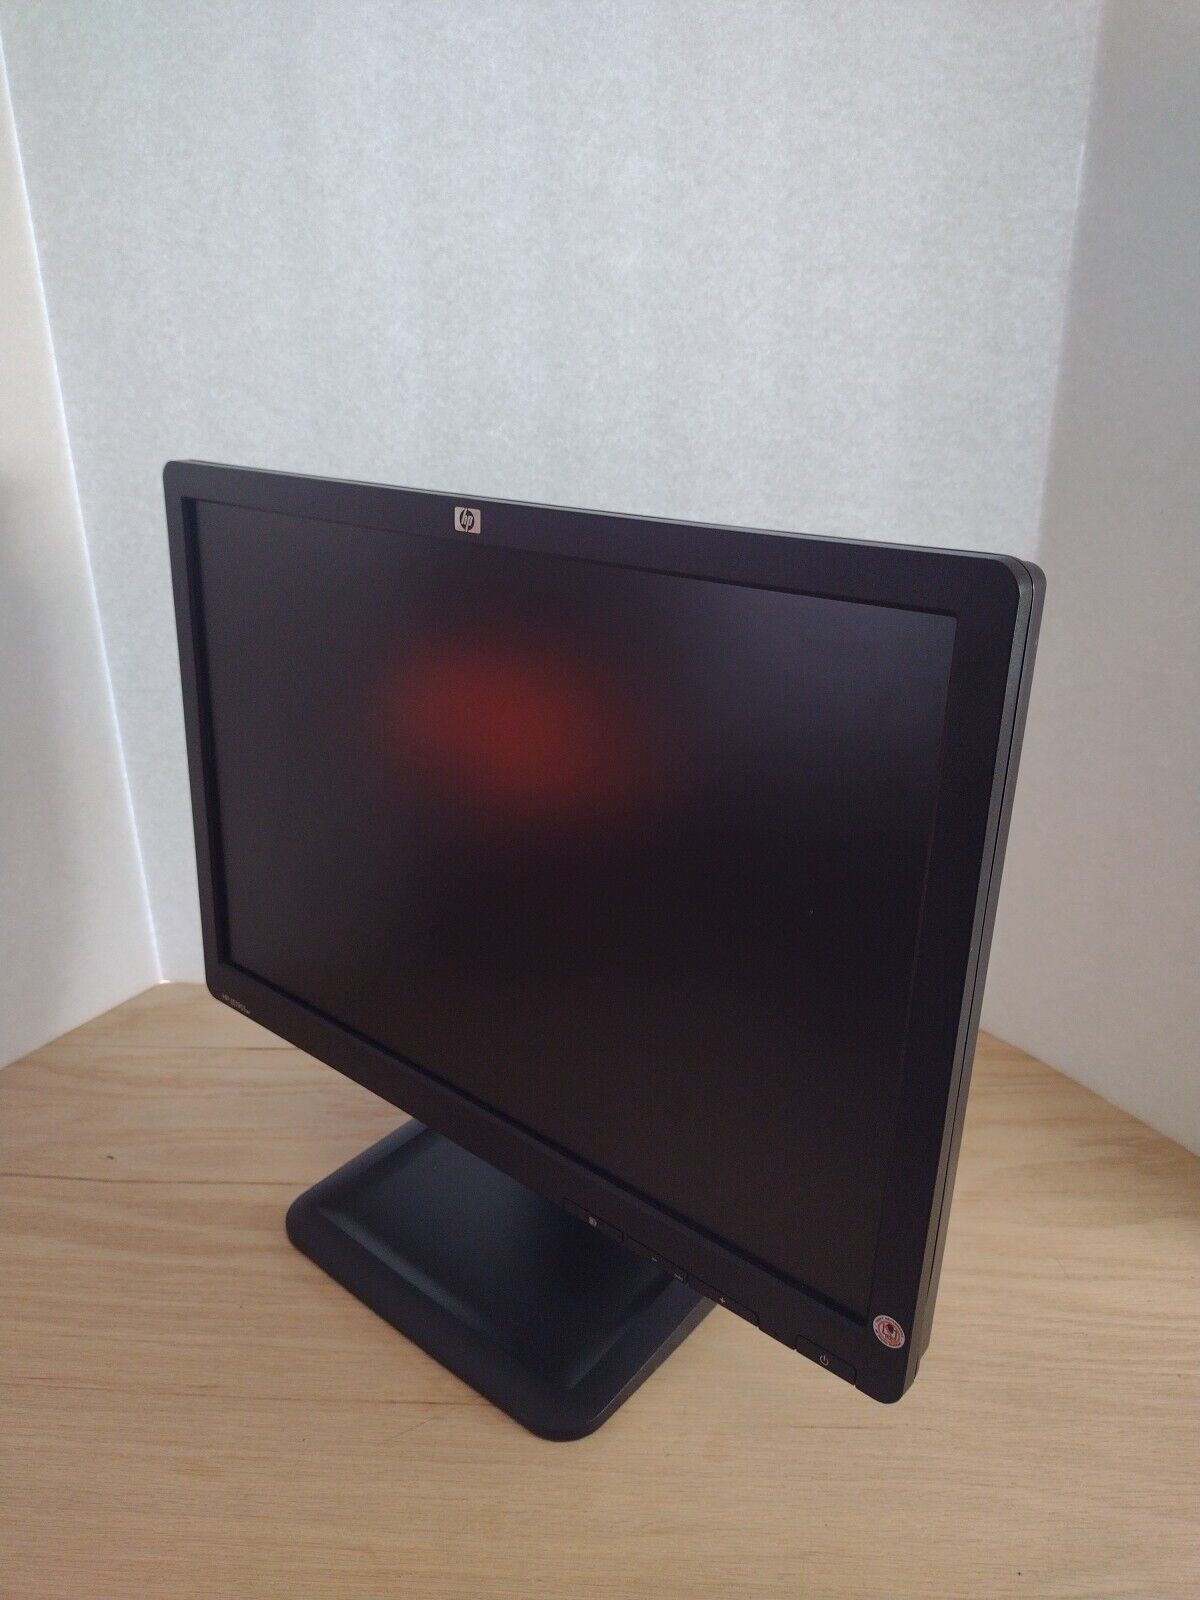 HP LE1901w 19” LCD Monitor 1440 x 900 Widescreen 16:10 1000:1 VGA Port 